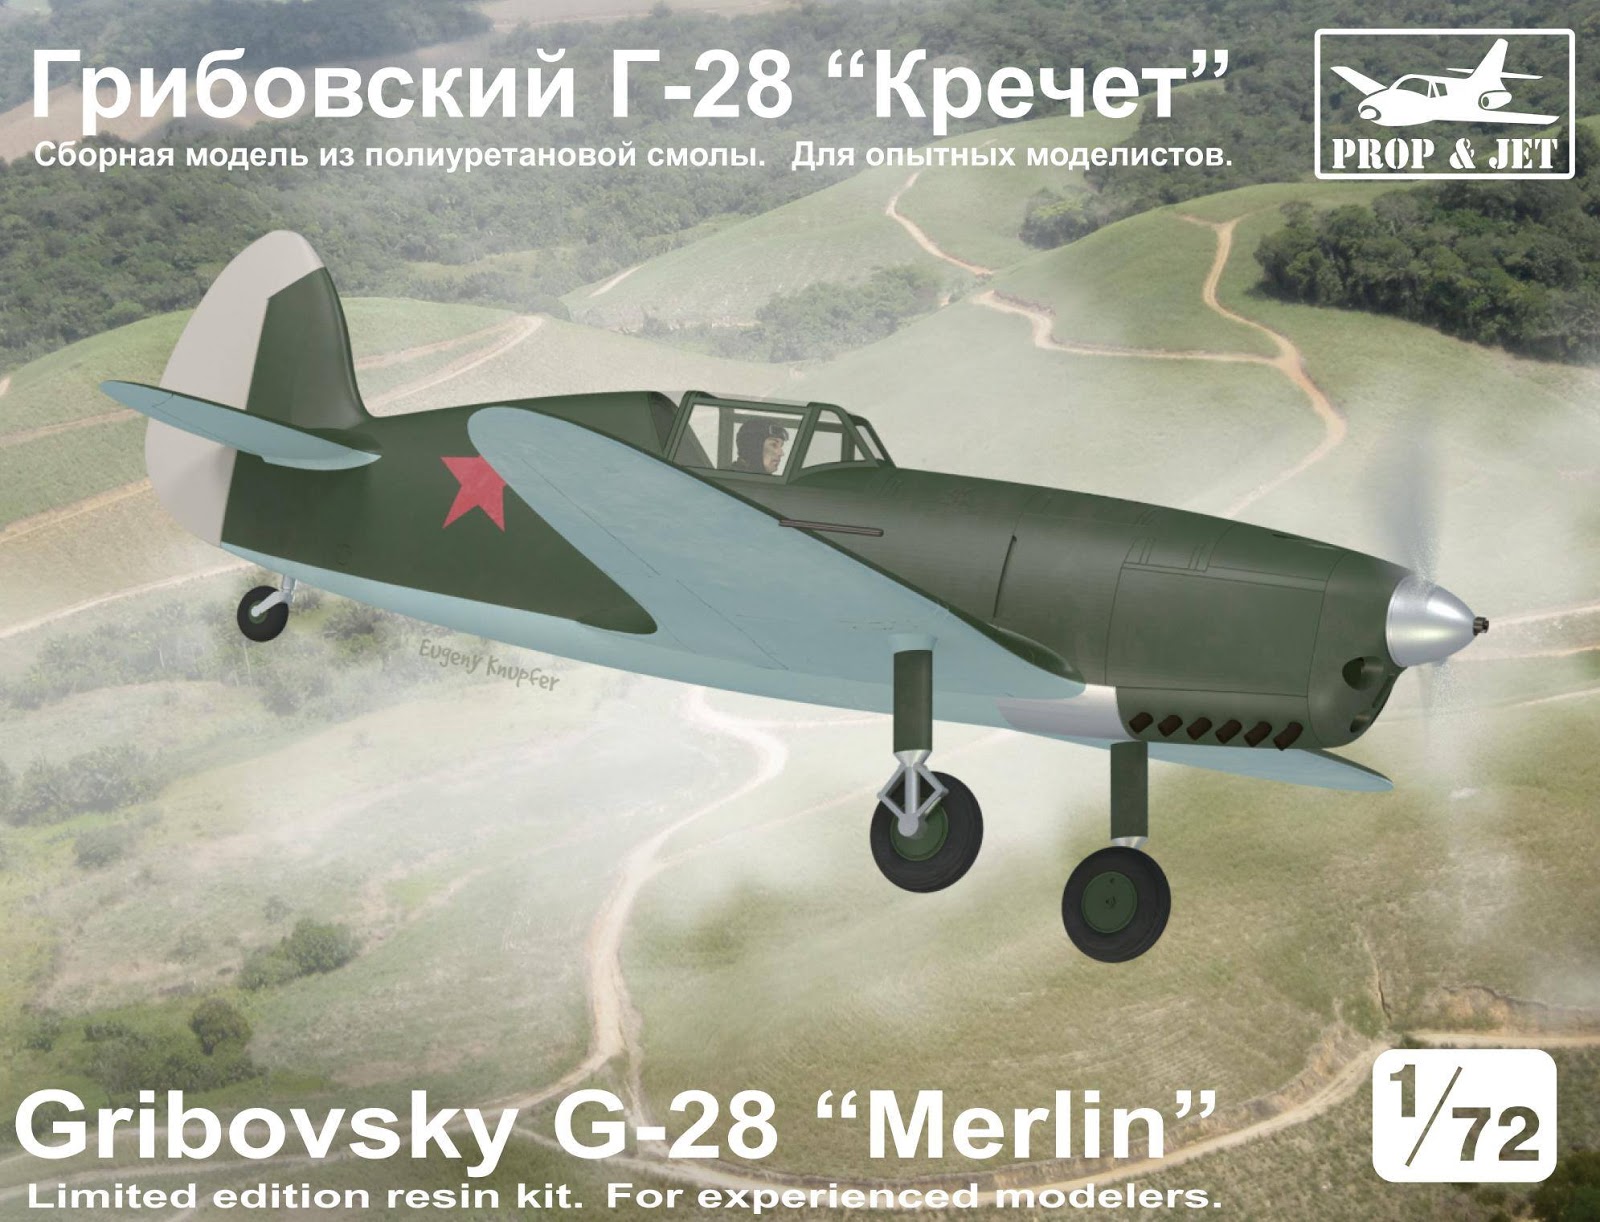 Gribovsky G-28 